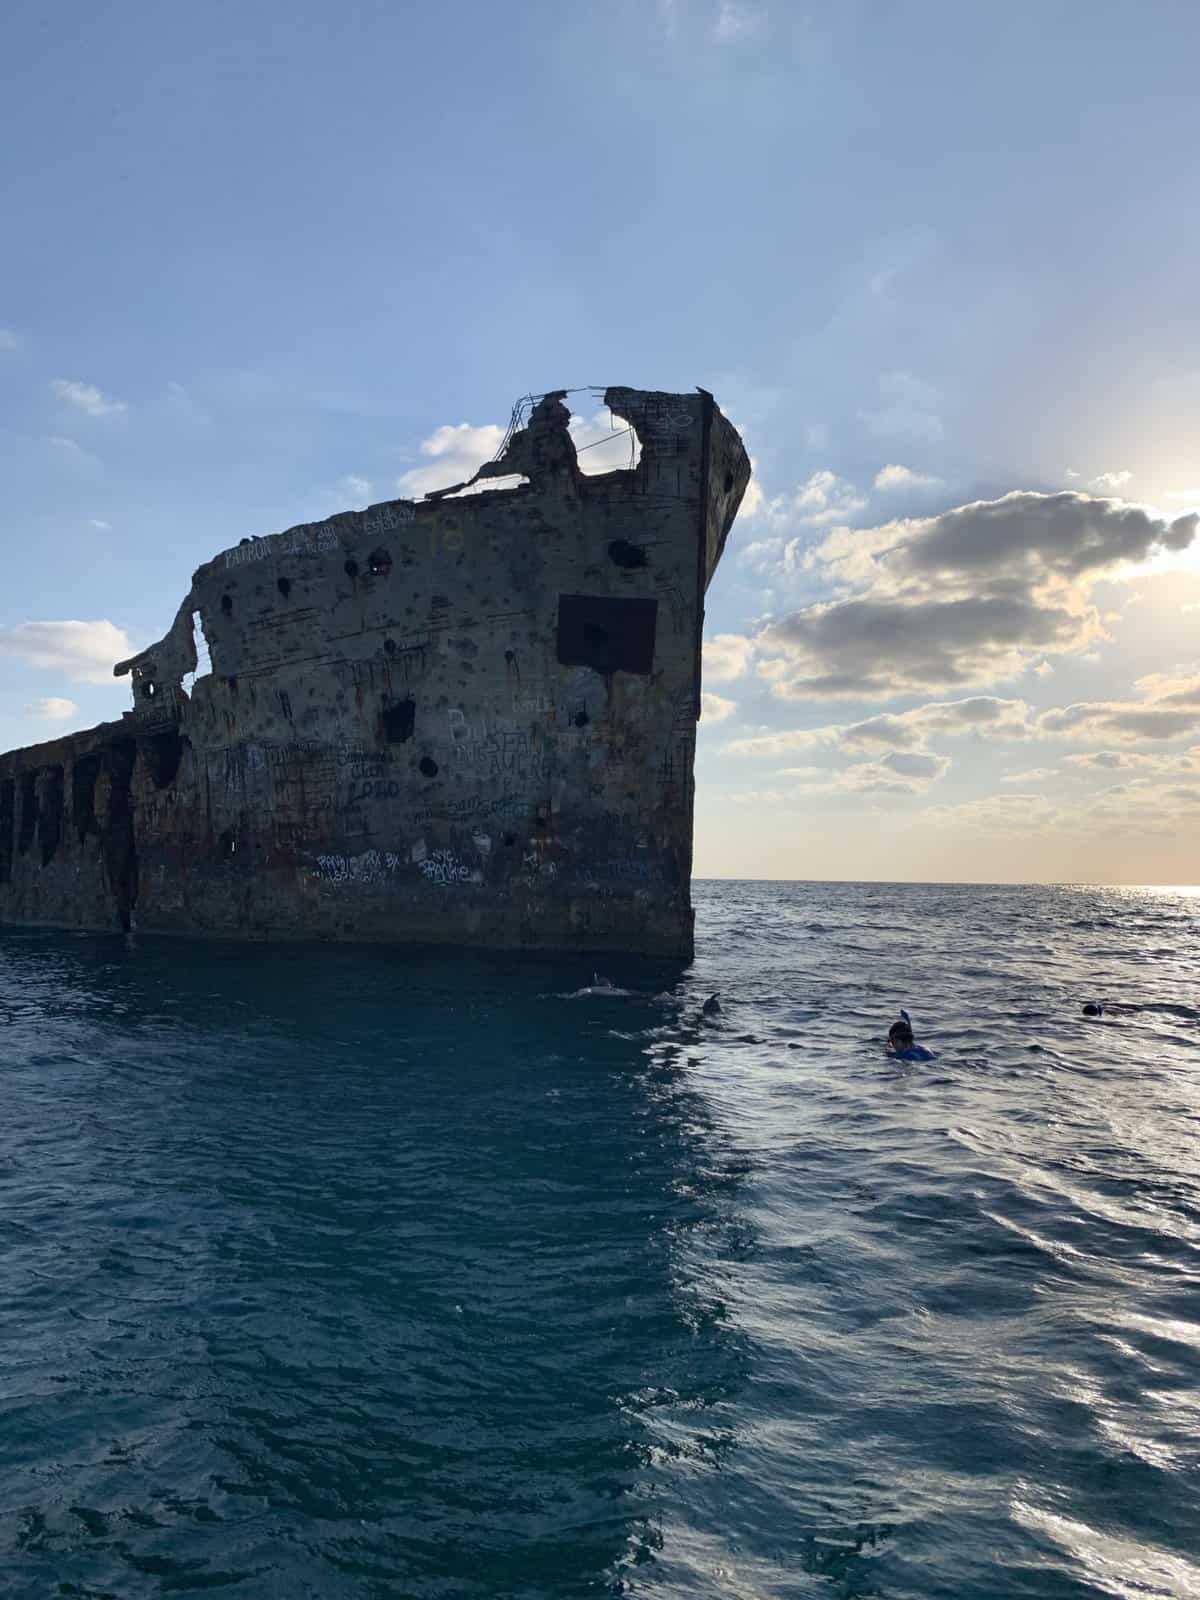 The Sapona shipwreck